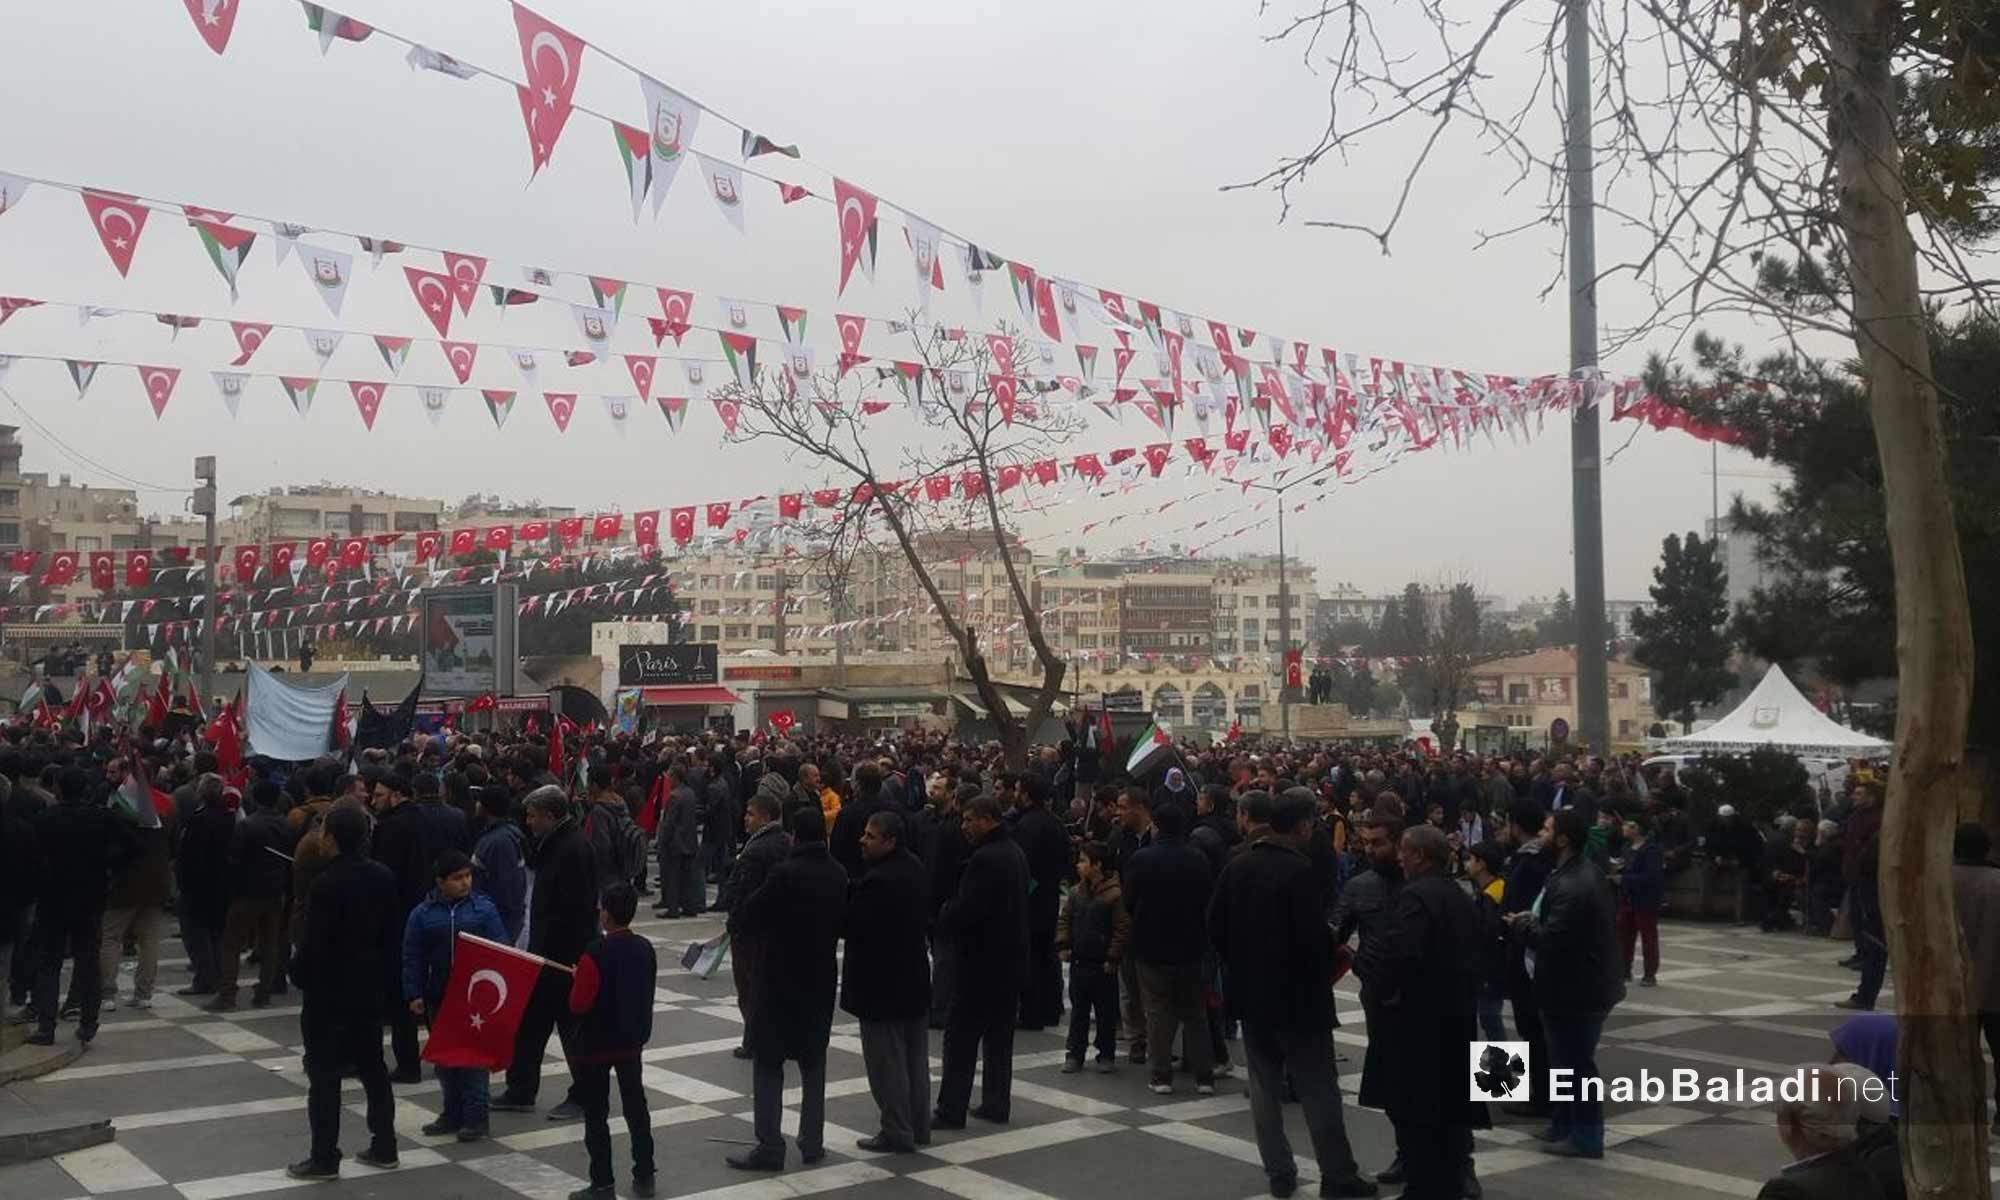  أتراك وسوريون في أورفة التركية يرفضون قرار ترامب حول القدس - 24 كانون الأول 2017 (عنب بلدي)